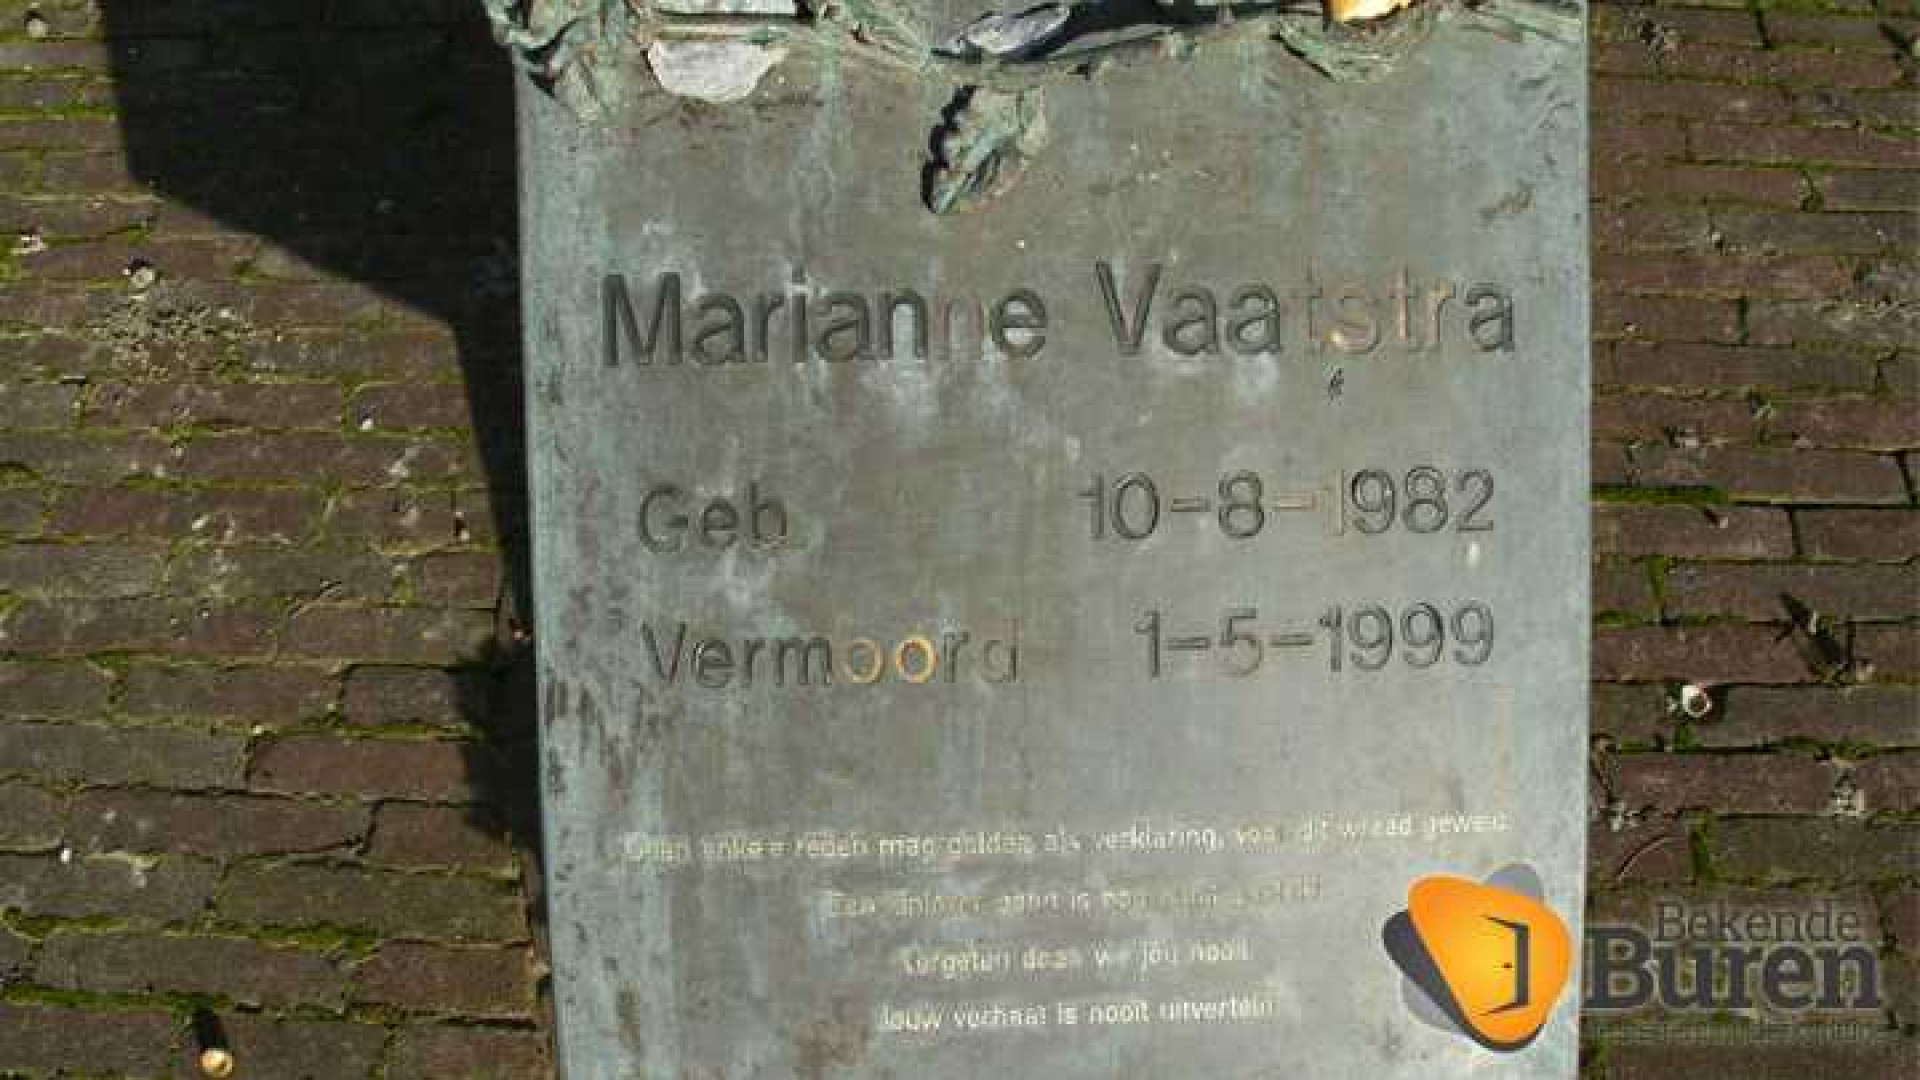 Moordenaar Marianne Vaatstra maakt miljoen euro winst op verkoop boerderij. Zie foto's 3